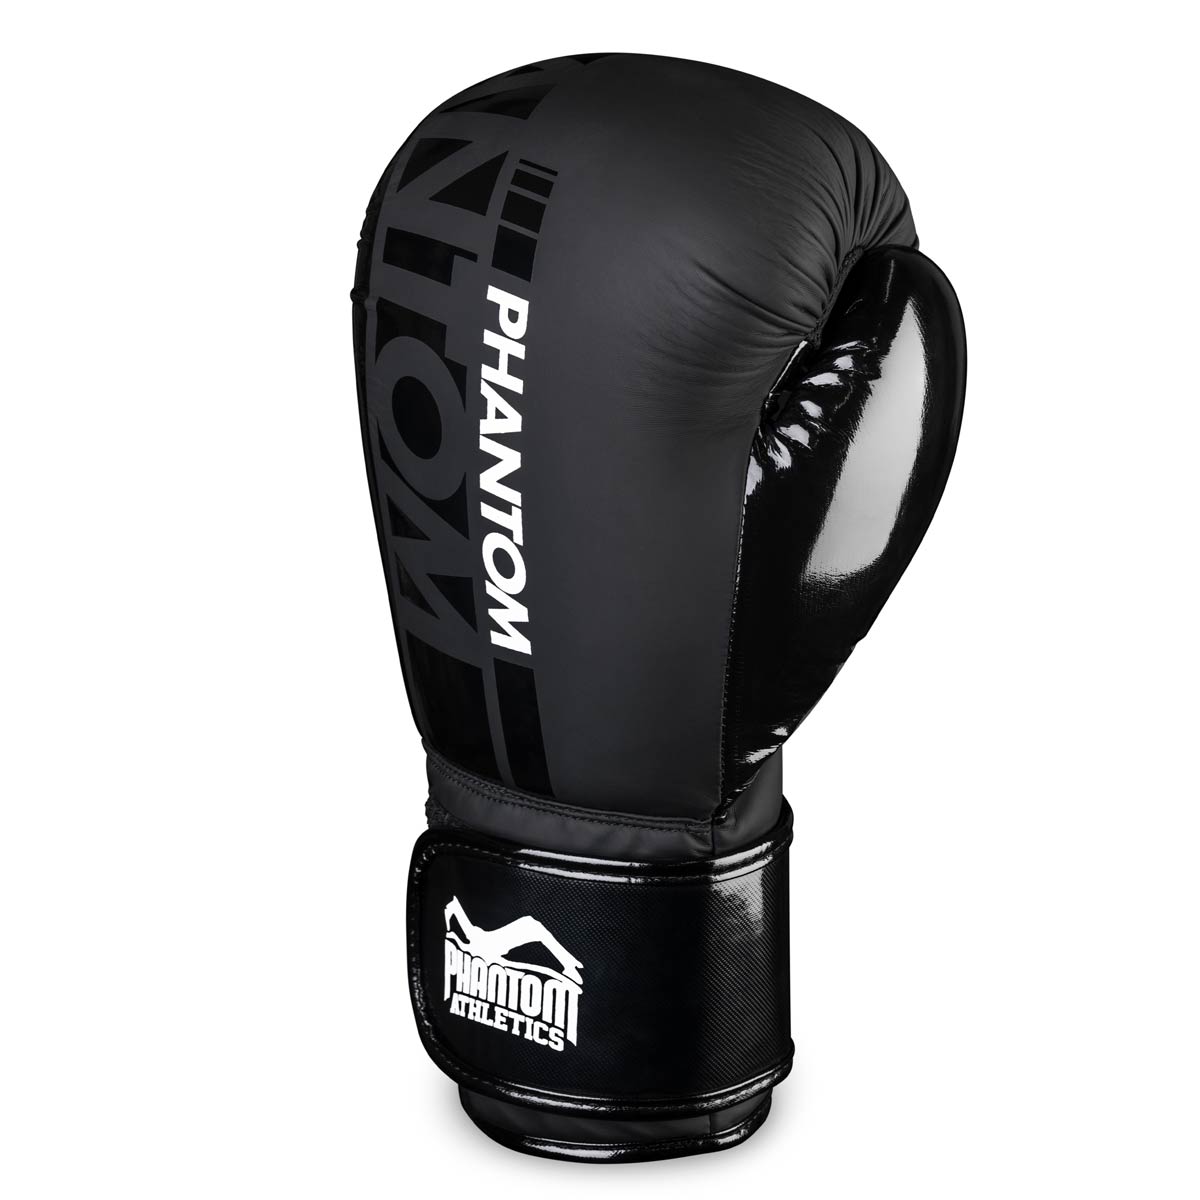 Phantom APEX Speed Boxhandschuhe für Kampfsport Training und Wettkampf. Mit hochqualitativer Polsterung und elastischem Klettverschluss für eine perfekte Handgelenksunterstützung. Linker Handschuh.